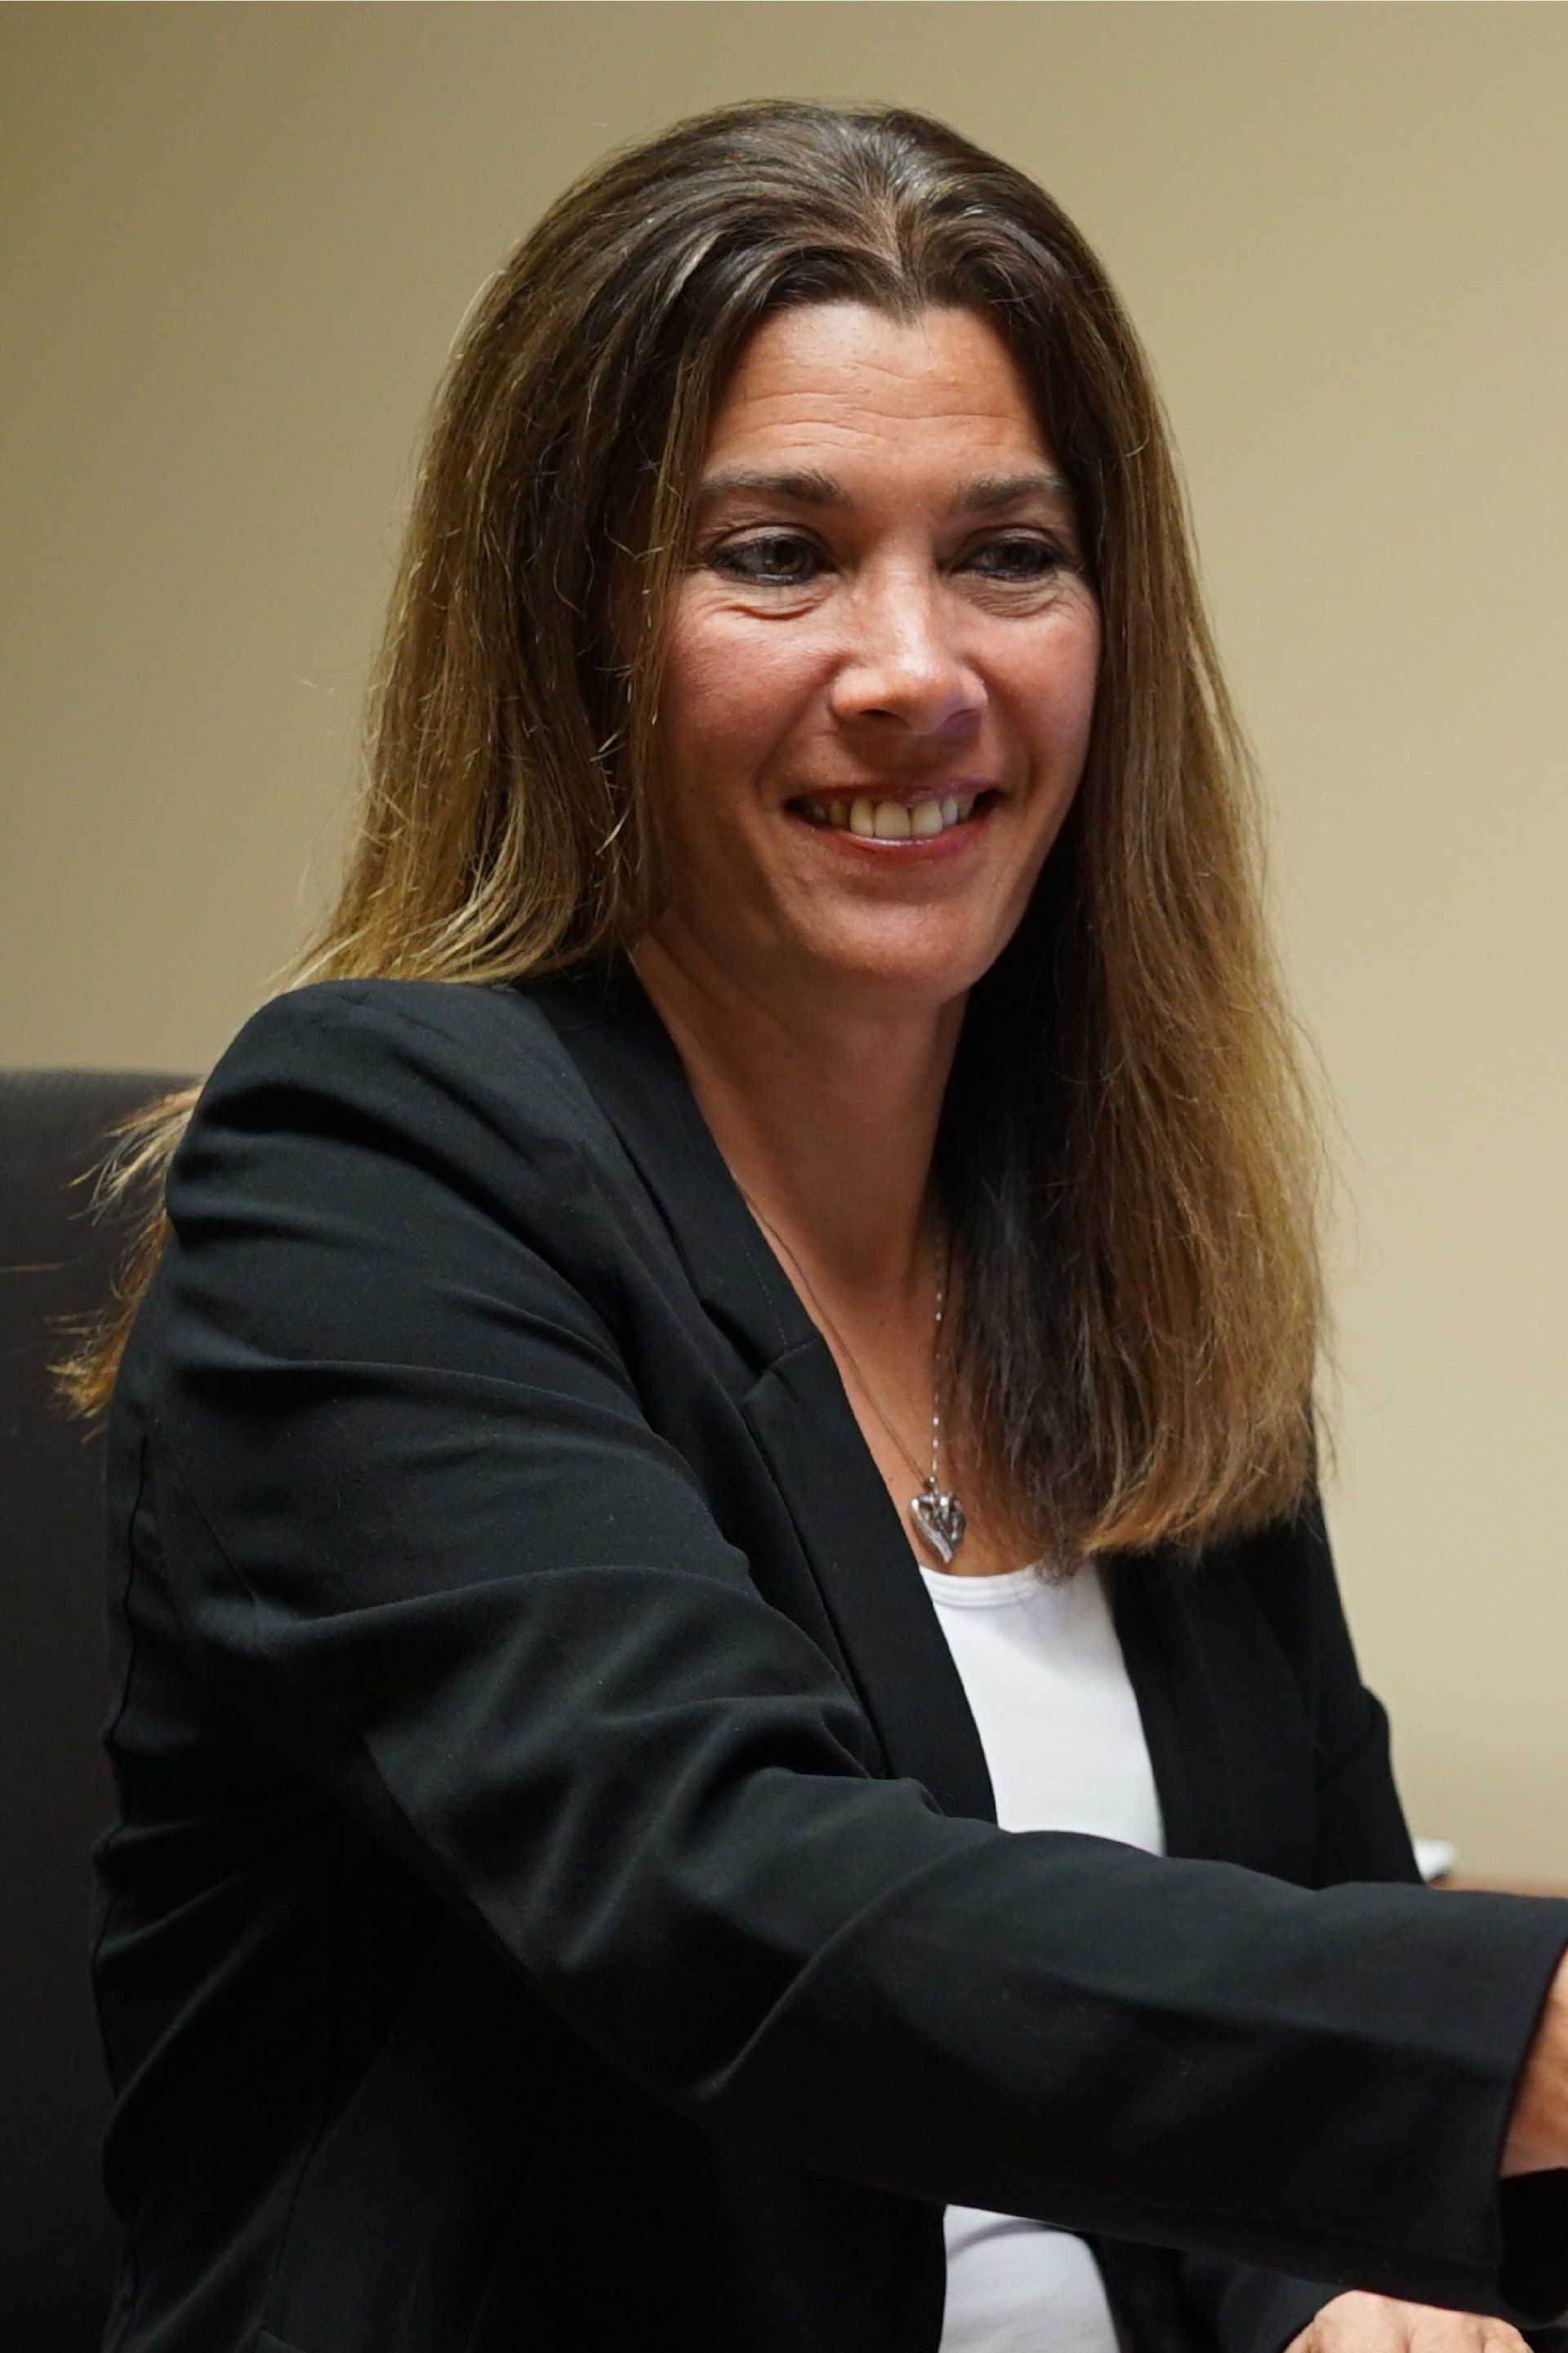 Gina Lechner